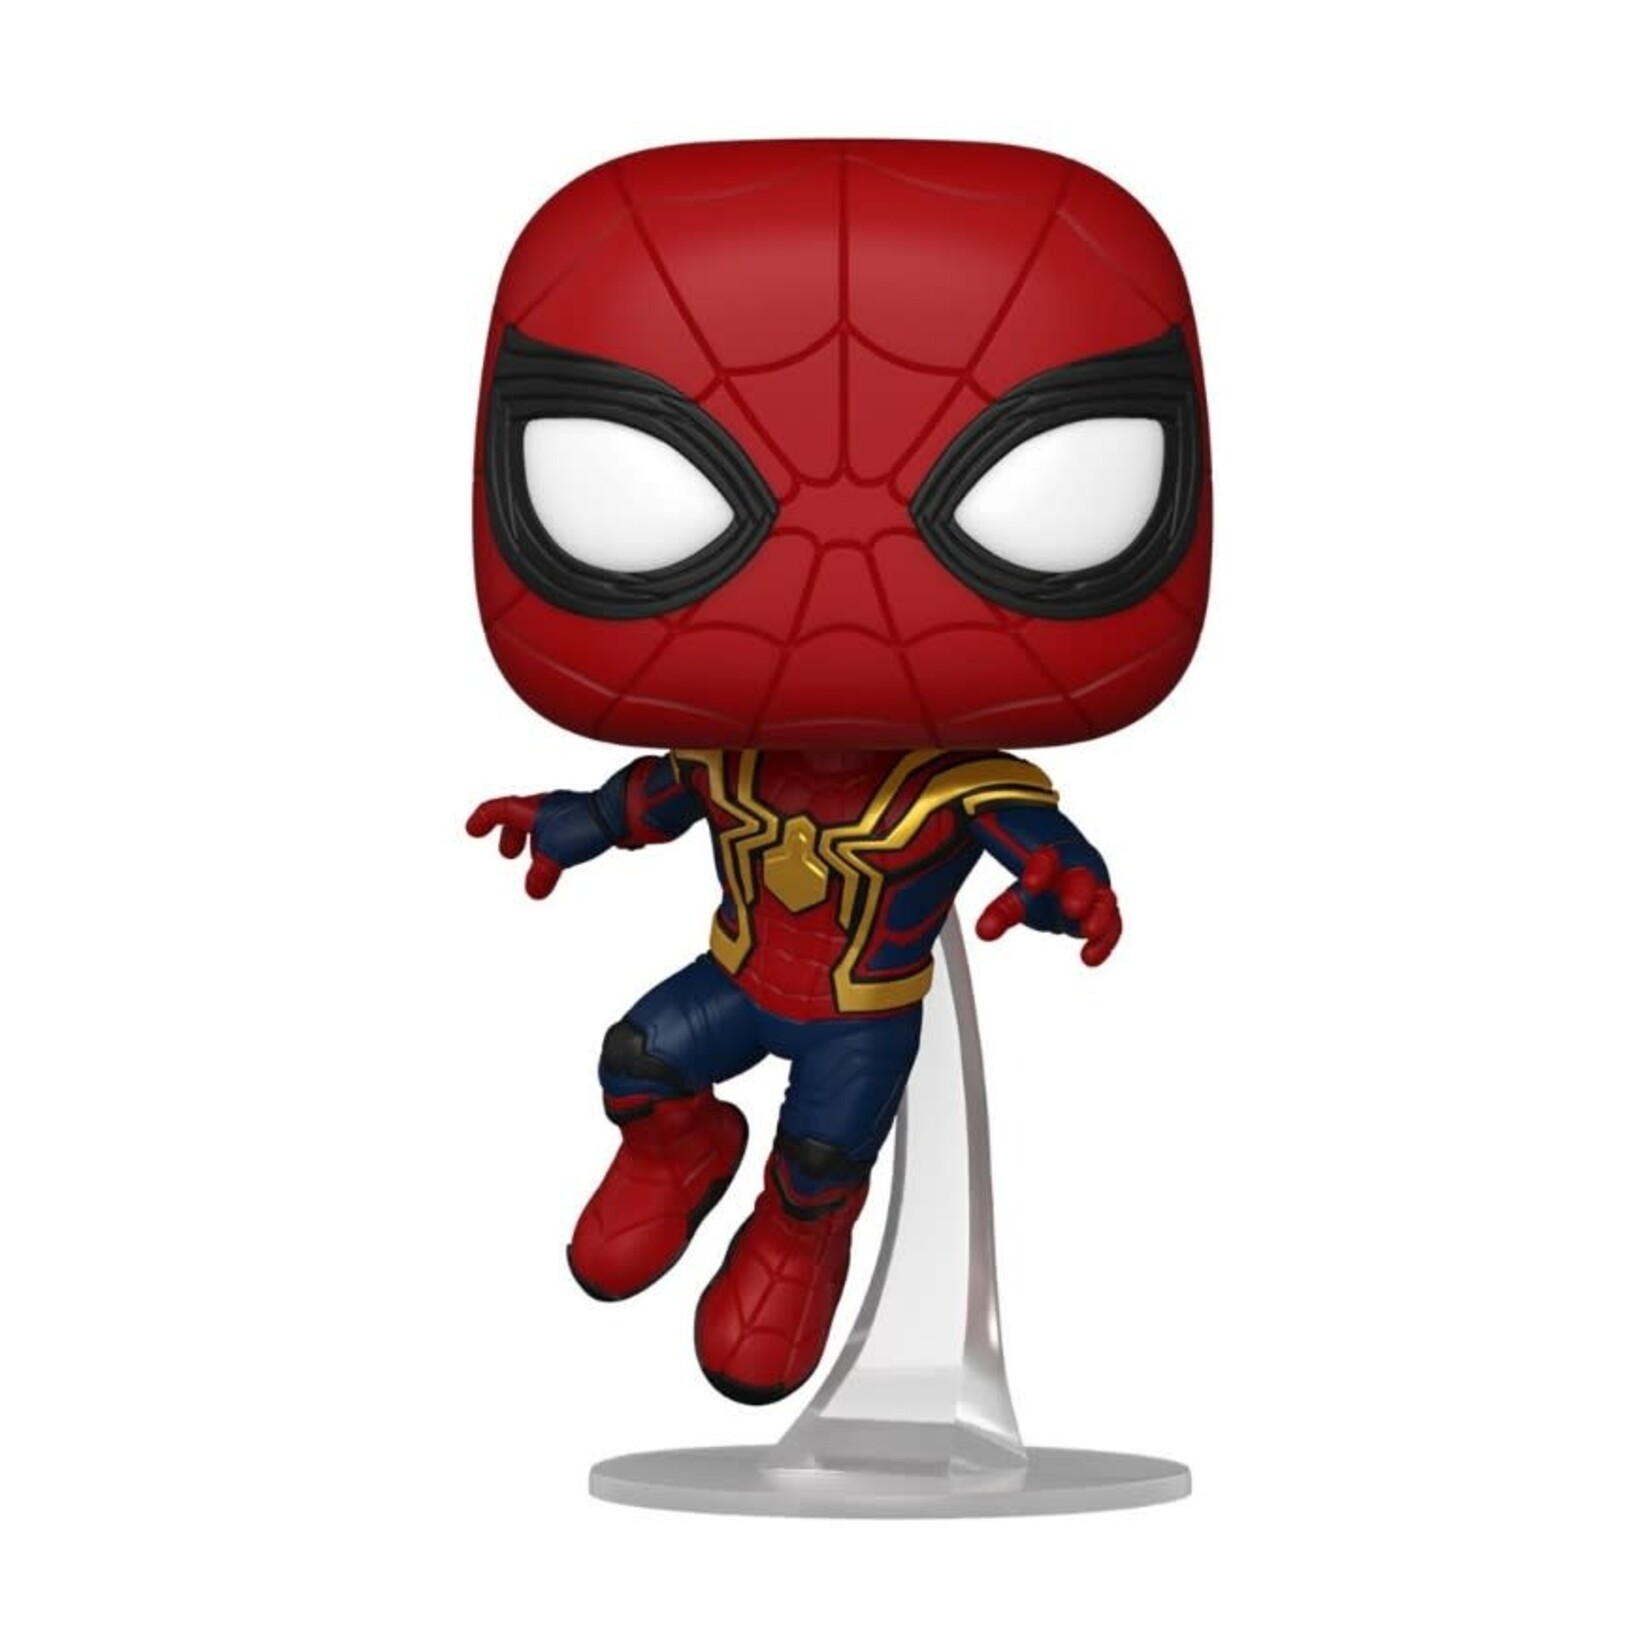 Spider-Man Spider-Man: No Way Home - Spider-Man Funko Pop! Figure